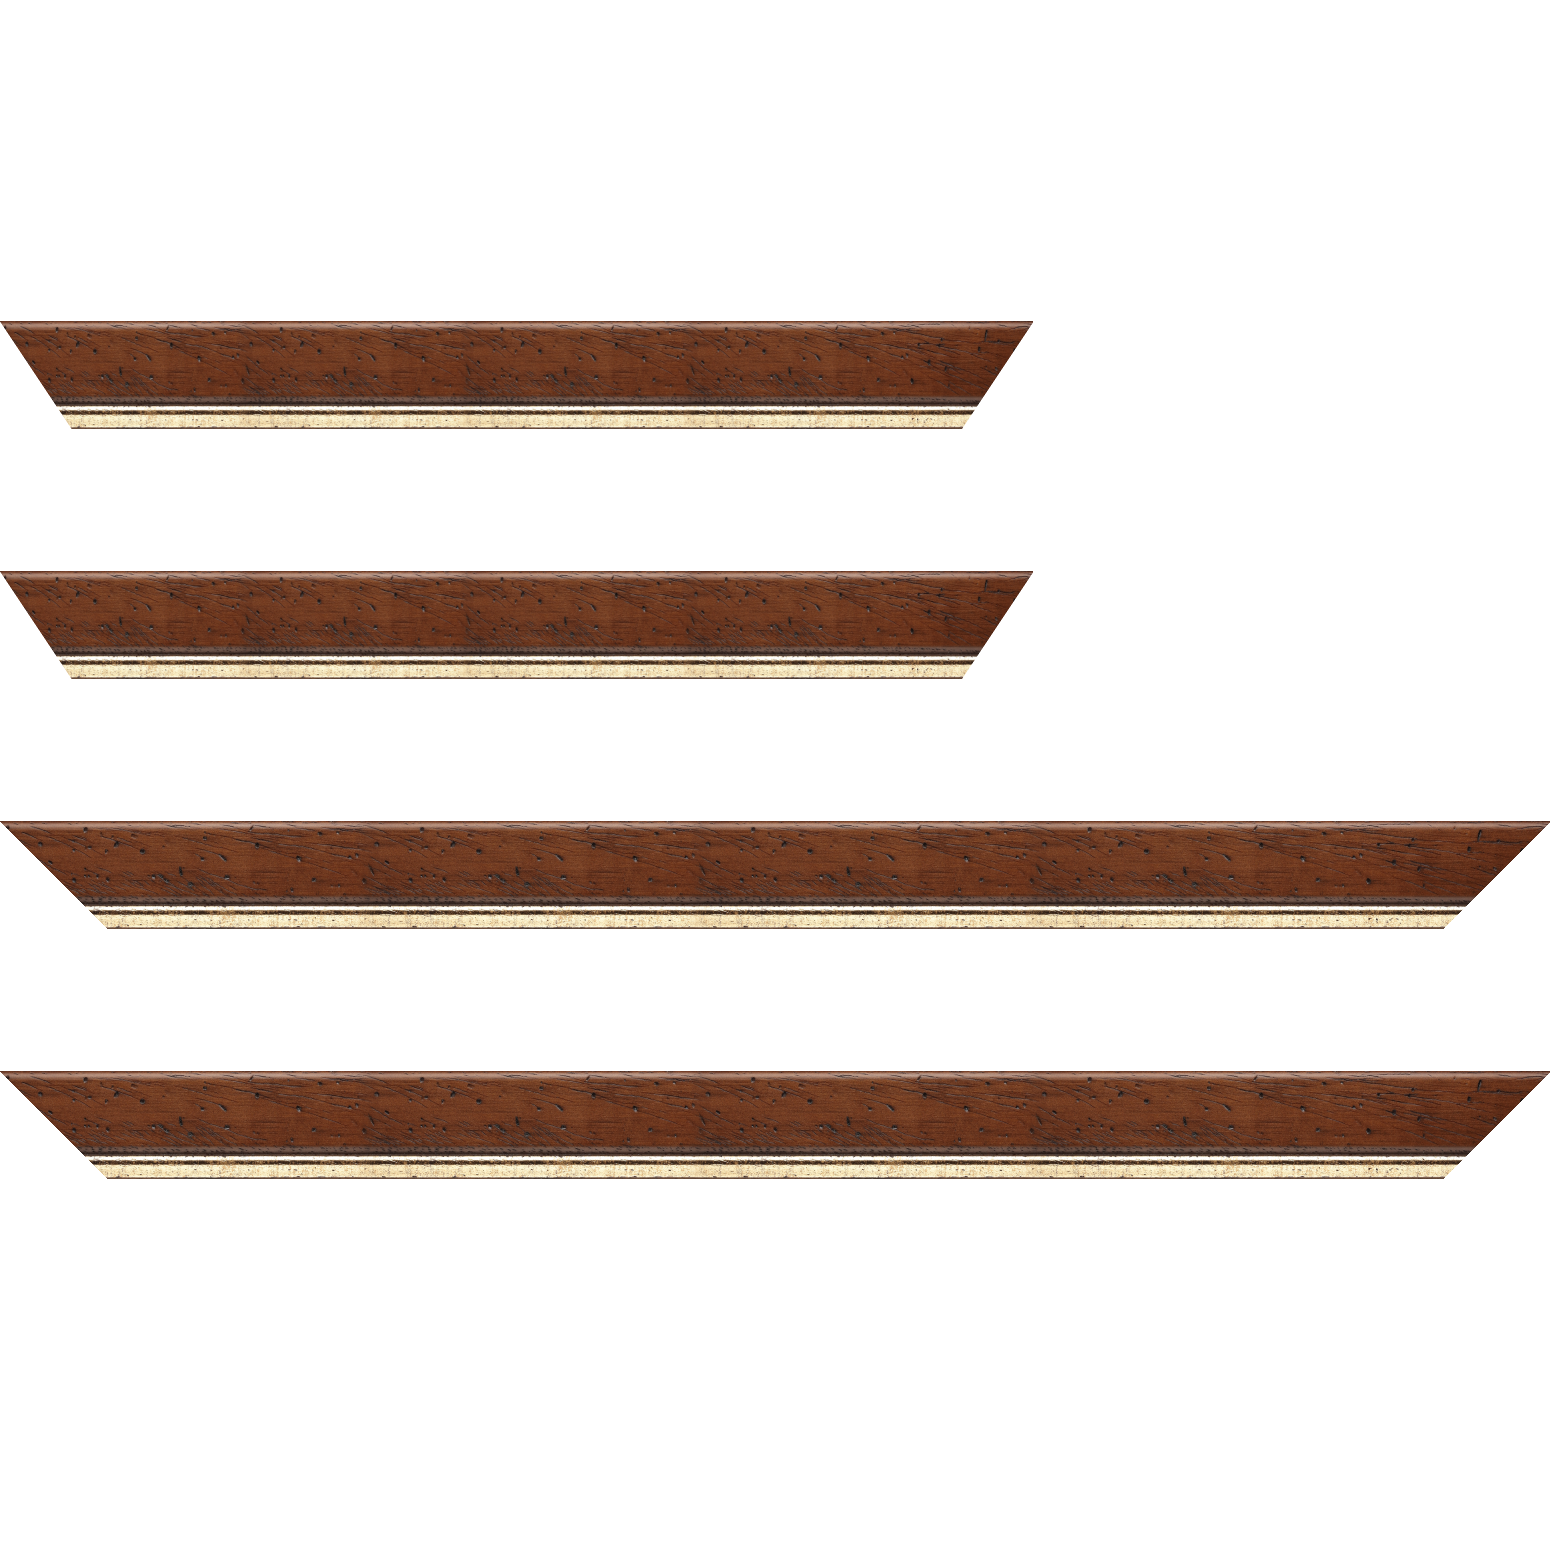 Baguette bois profil arrondi largeur 3.5cm marron satiné classique filet or - 18x24